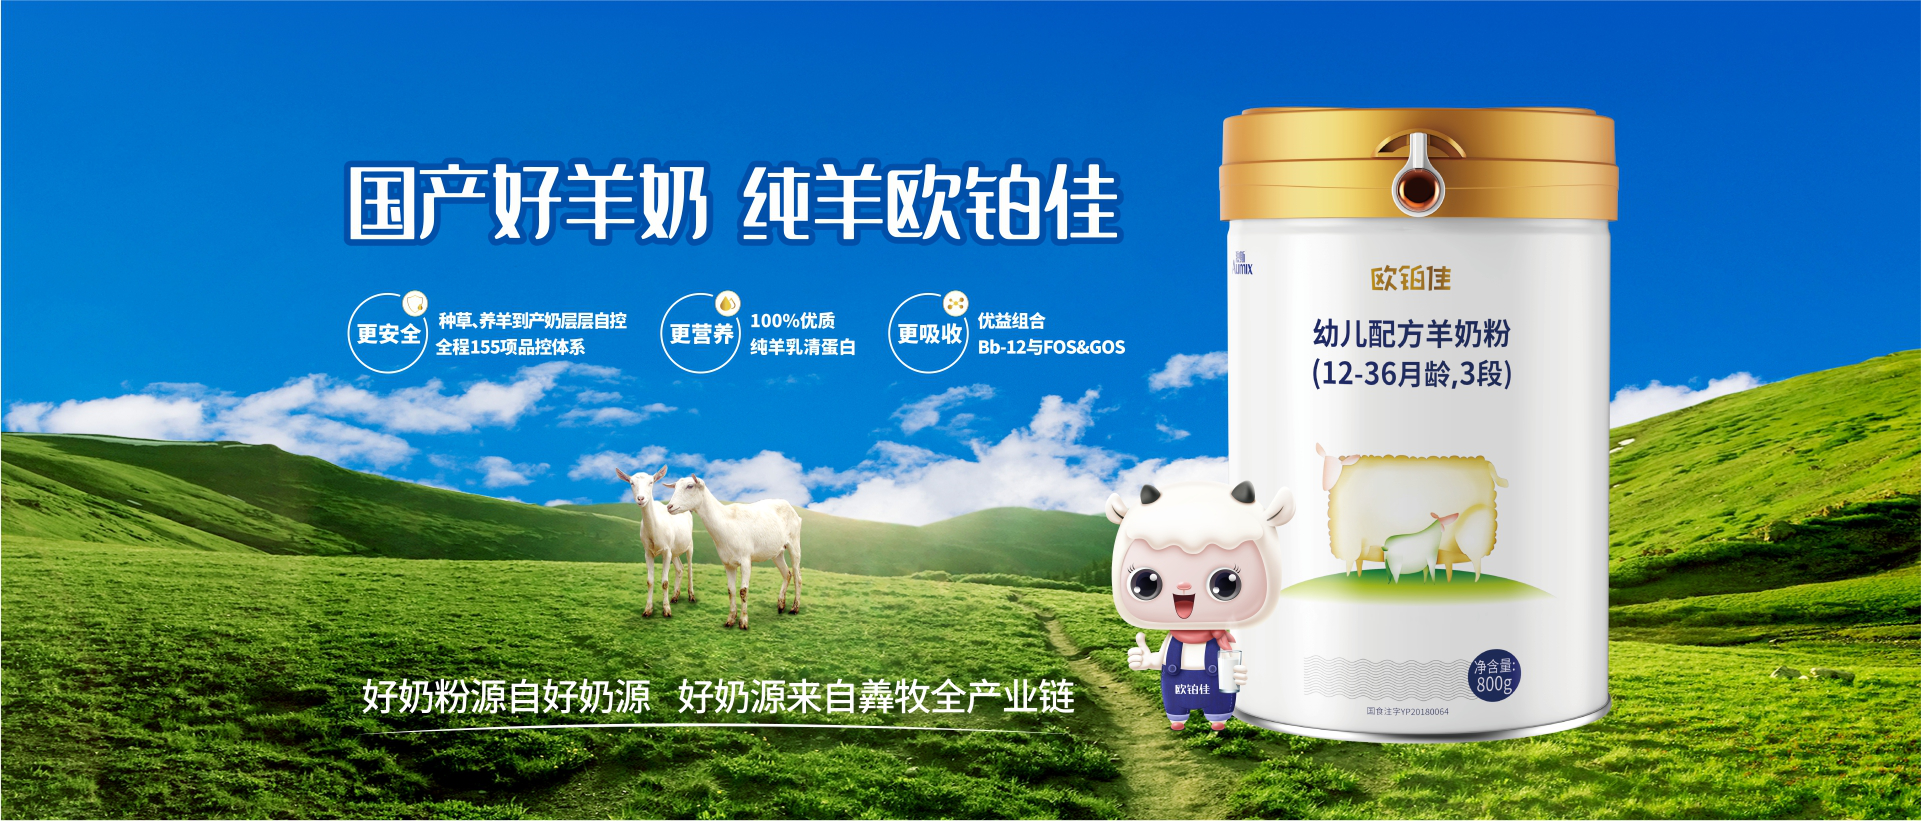 中国什么牌子的羊奶粉最好